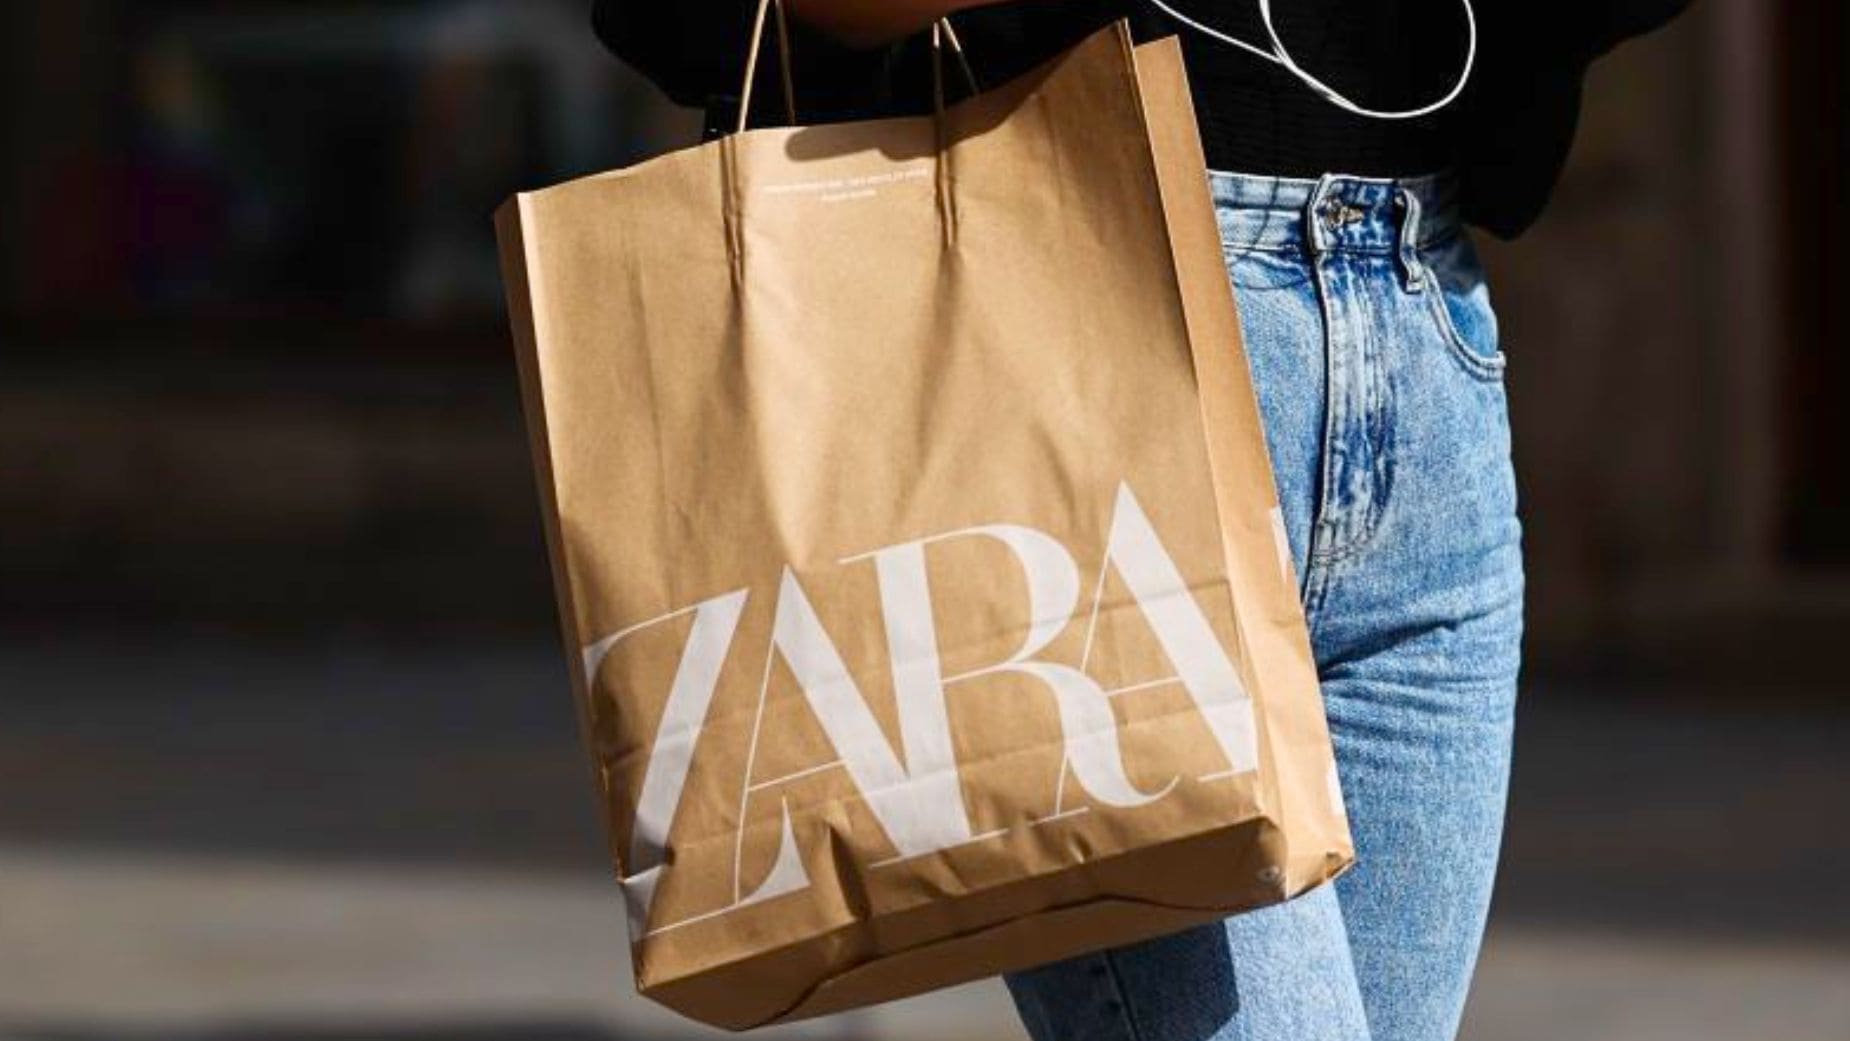 ZARA GASTOS ENVÍO  Si vas a comprar en Zara, atiende: qué está pasando con  la subida de gastos de envío